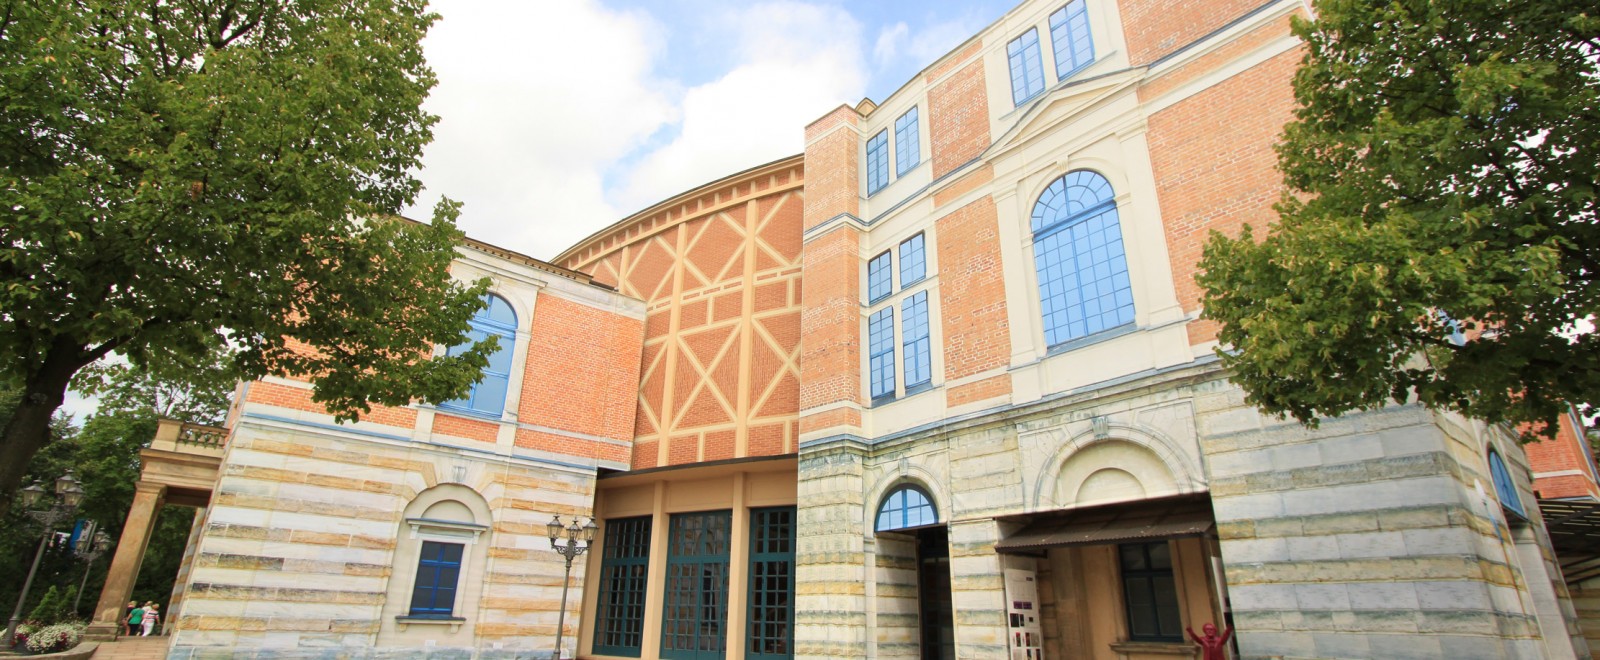 Festspielhaus Bayreuth, Beginn der Generalsanierung 2014